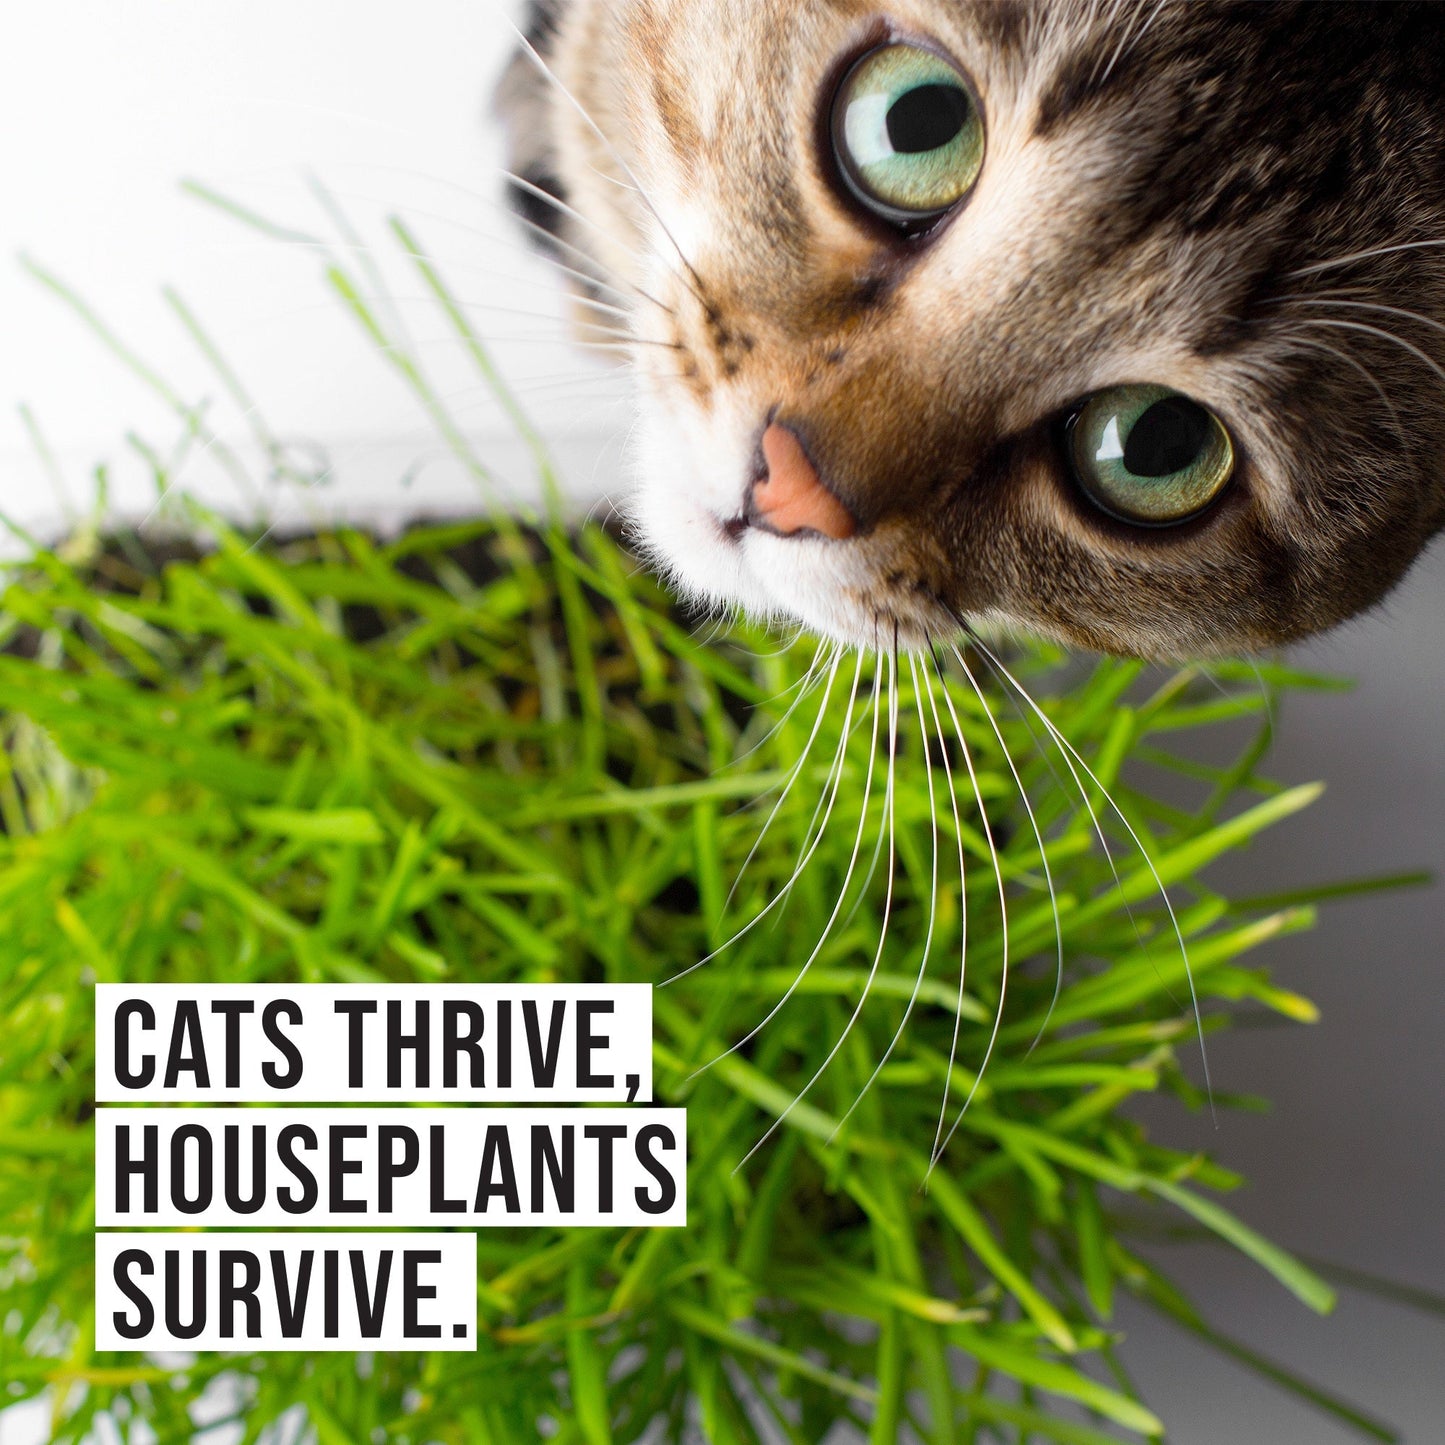 Cat Grass Growing Kit (3 Pack) - Organic Cat Grass Seeds